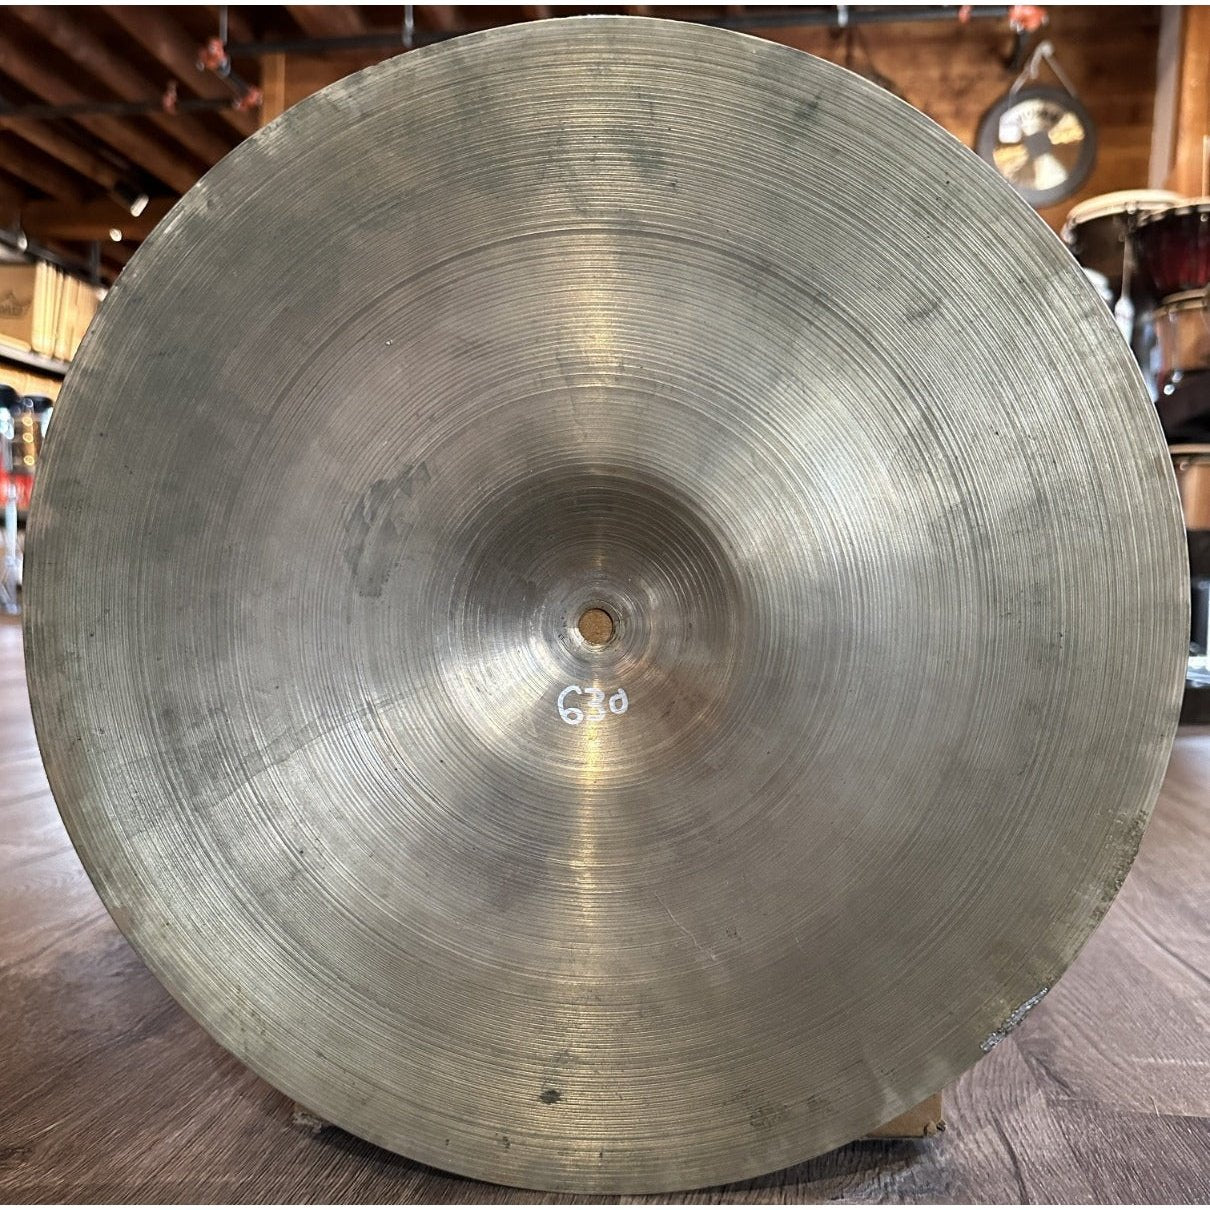 Used Vintage Zildjian Crash Cymbal 14 - 630 grams